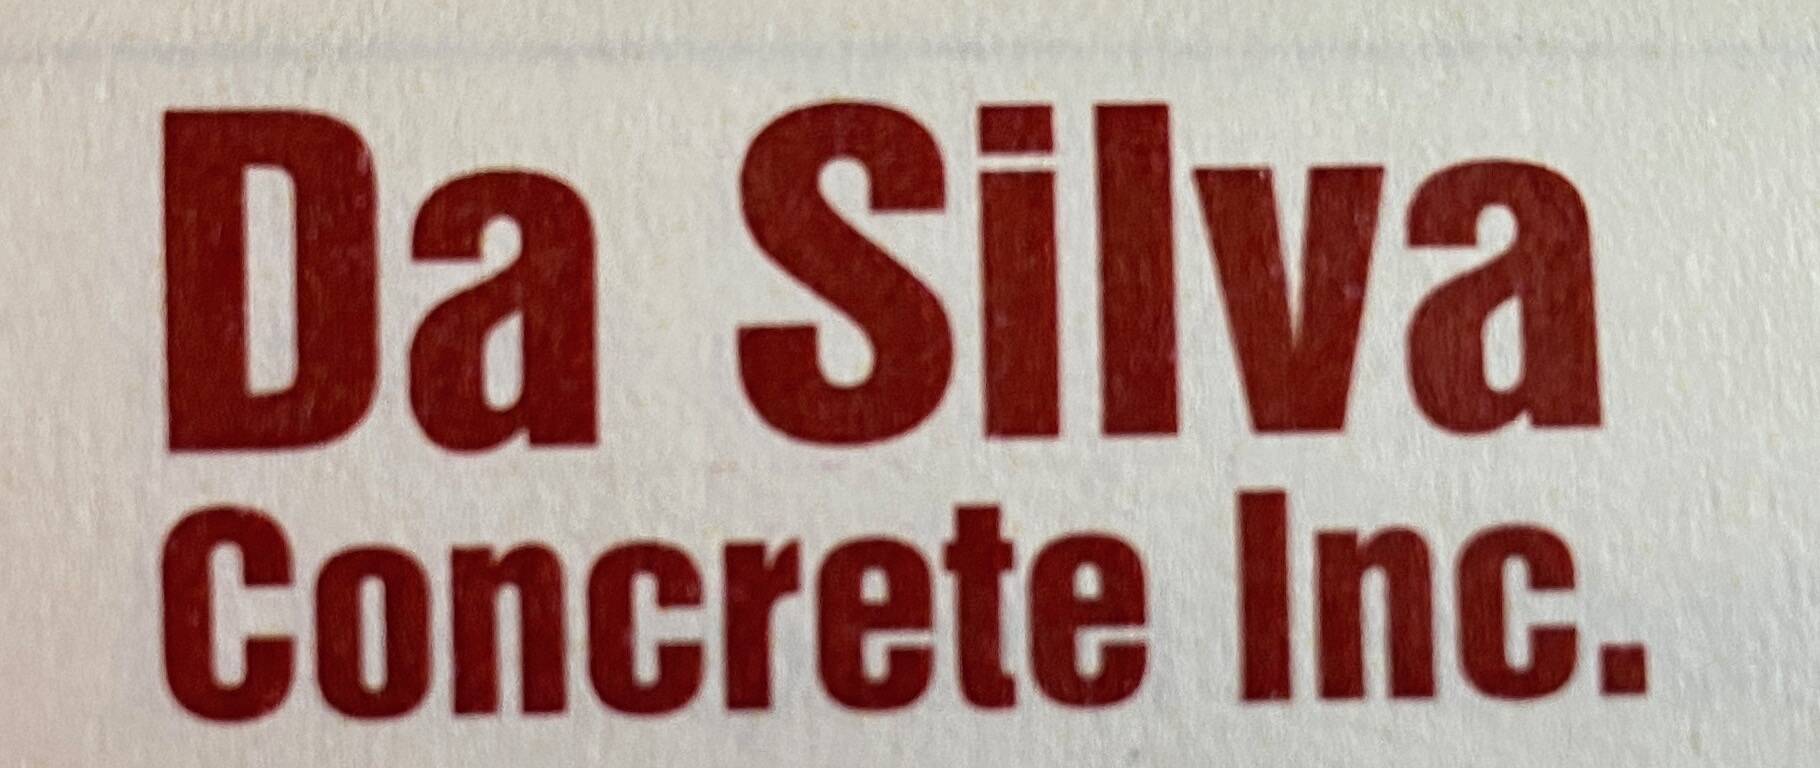 Da Silva Concrete Inc.